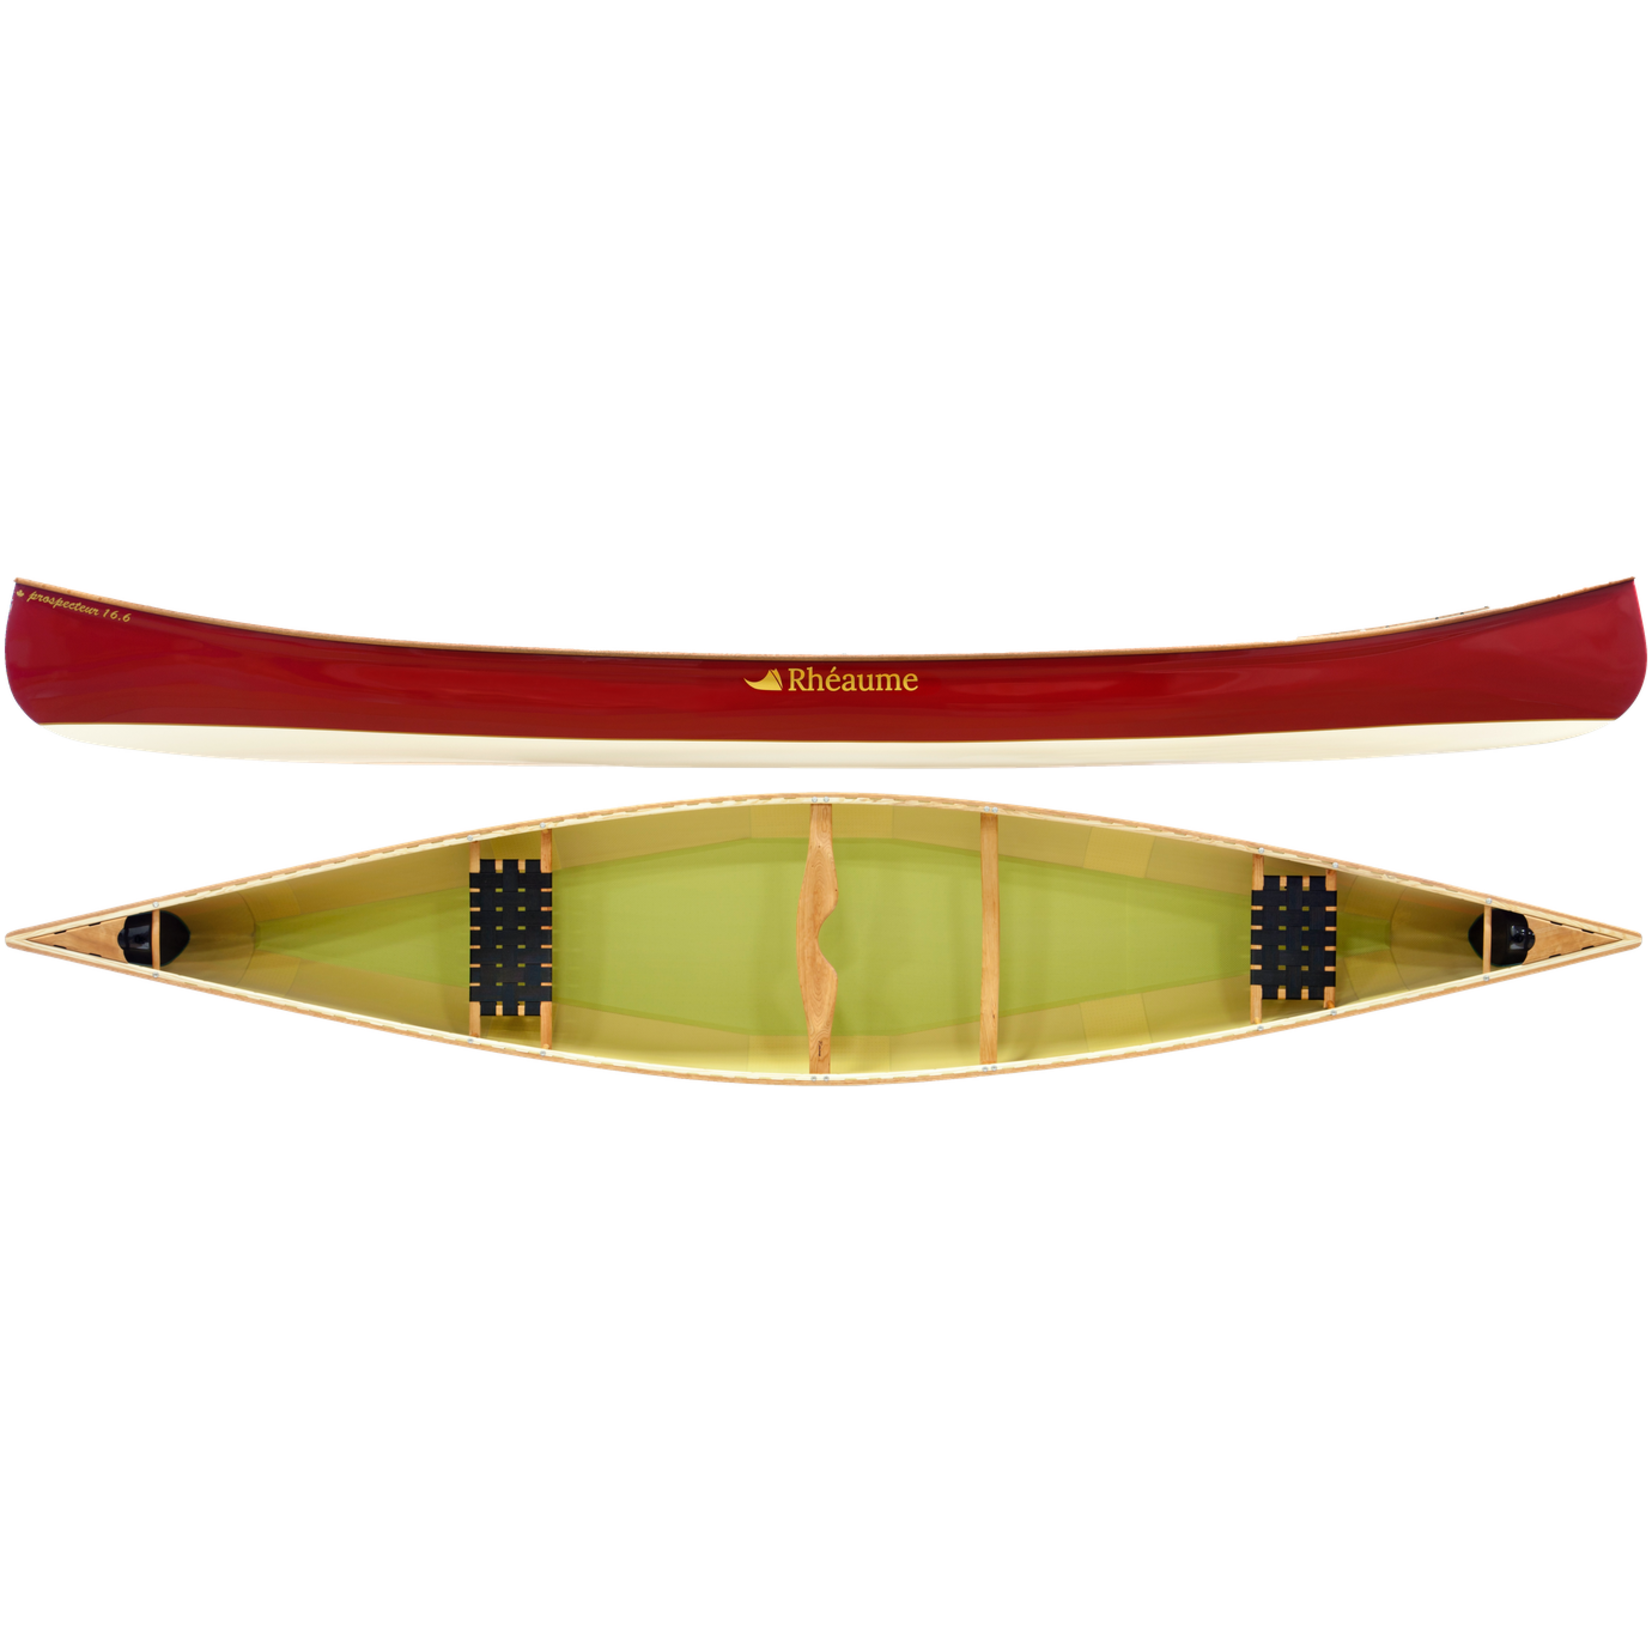 Rhéaume Canot Prospecteur 16 pieds 6 pouces en fibre de verre avec plats-bords en bois rouge